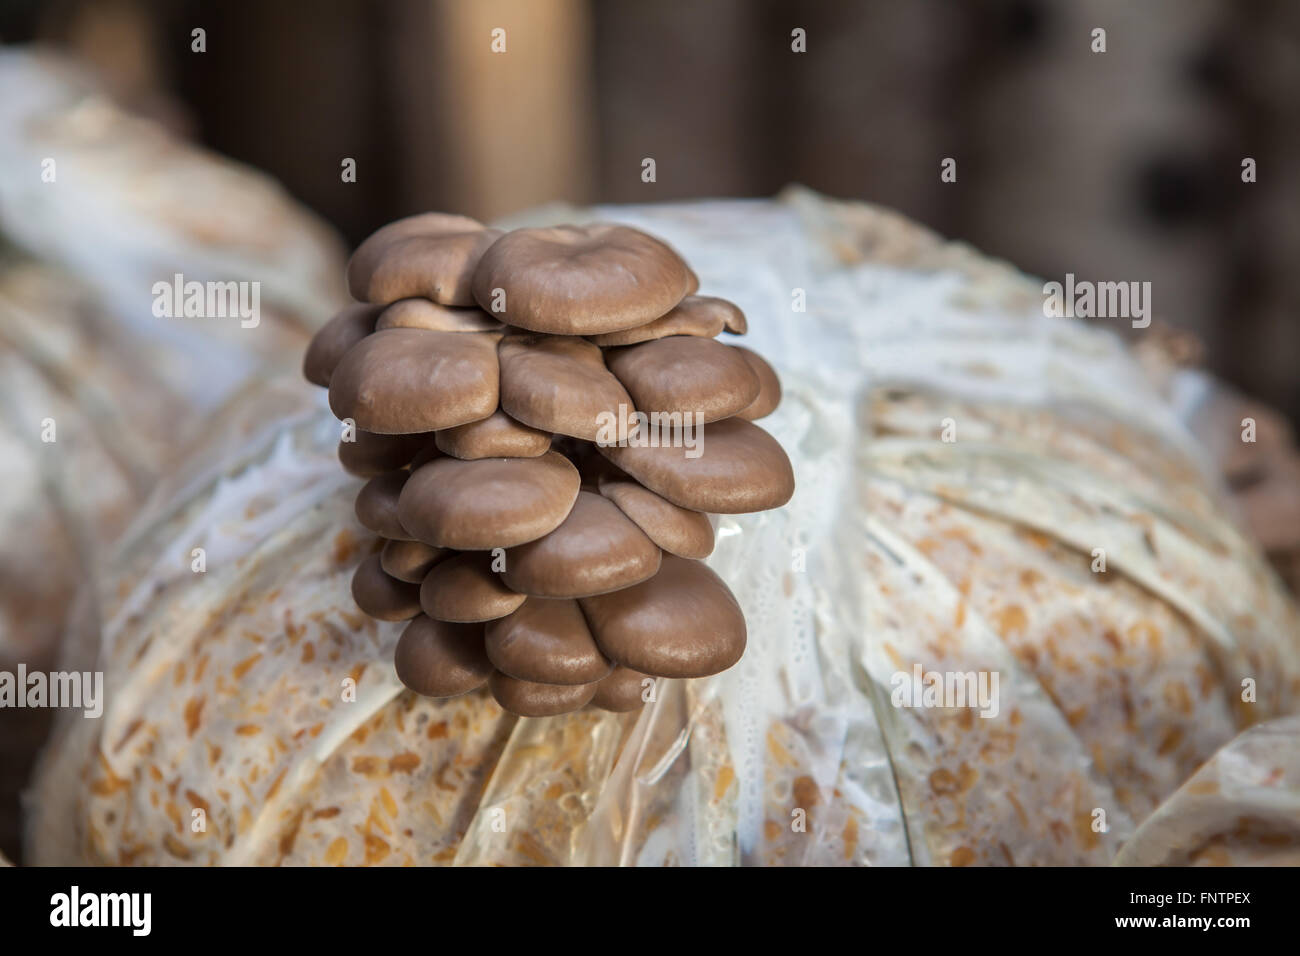 oyster mushrooms grow on a mushroom farm Stock Photo